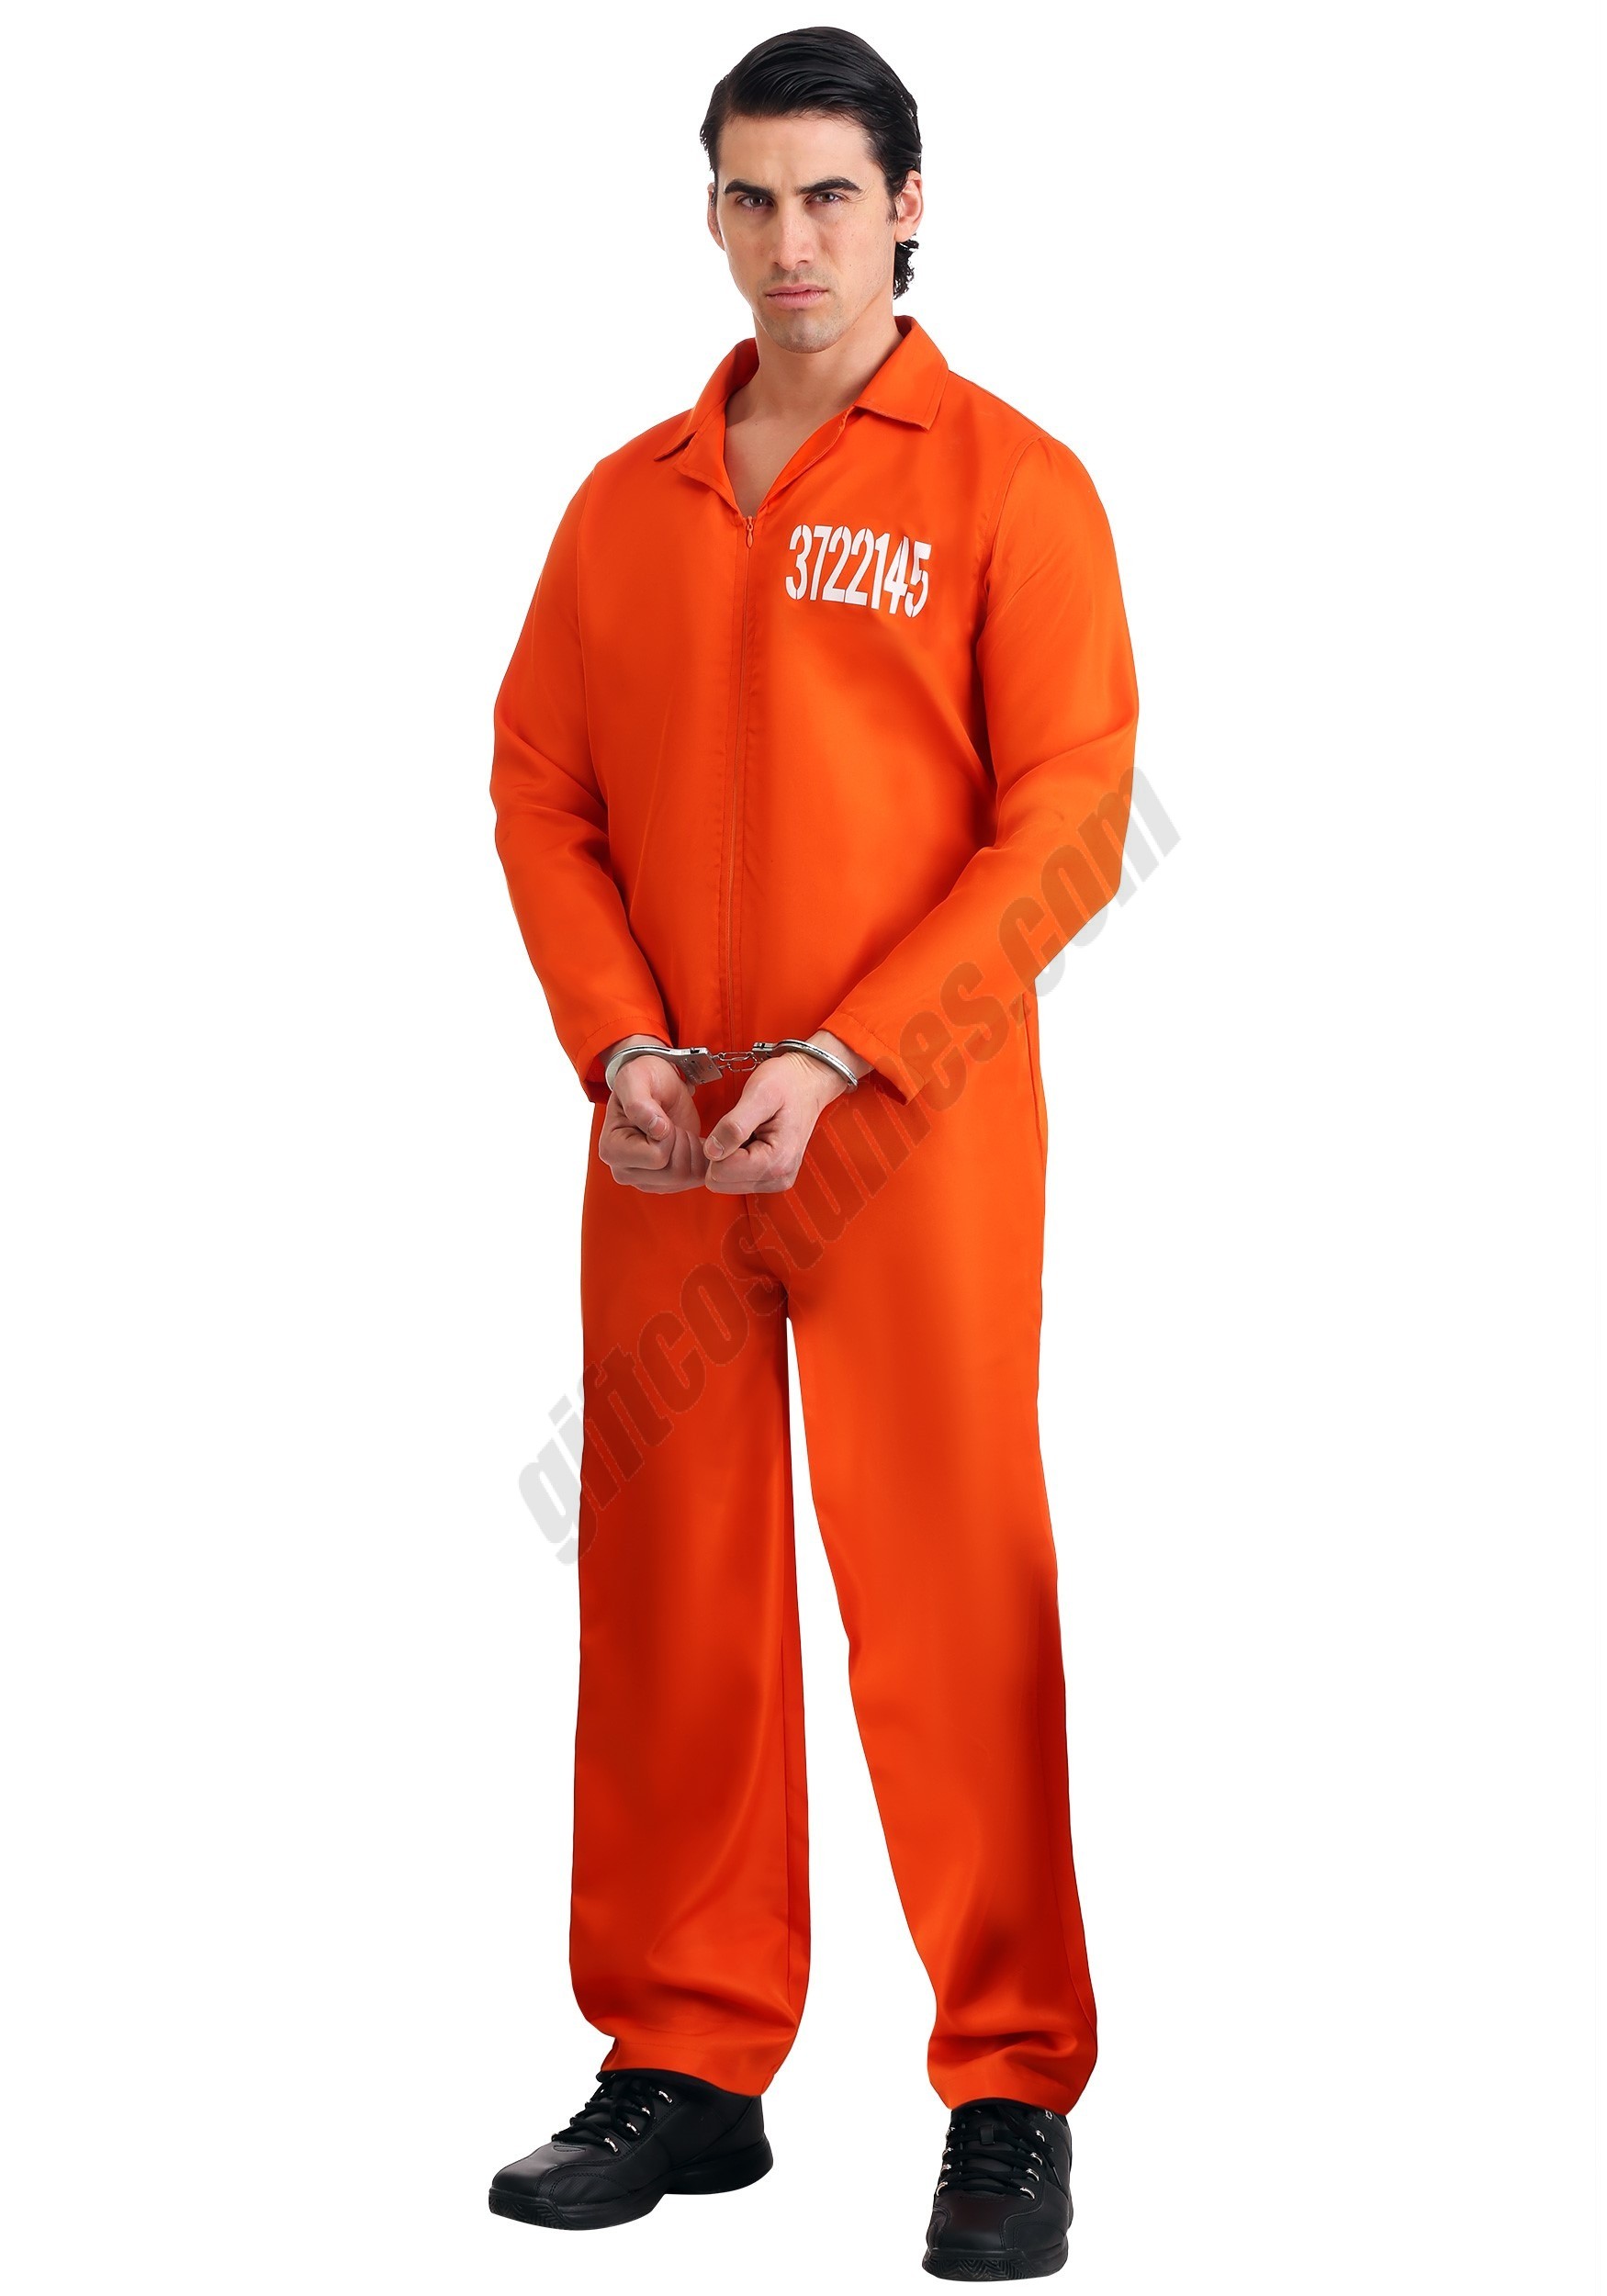 Men's Orange Prison Jumpsuit - Men's - Men's Orange Prison Jumpsuit - Men's